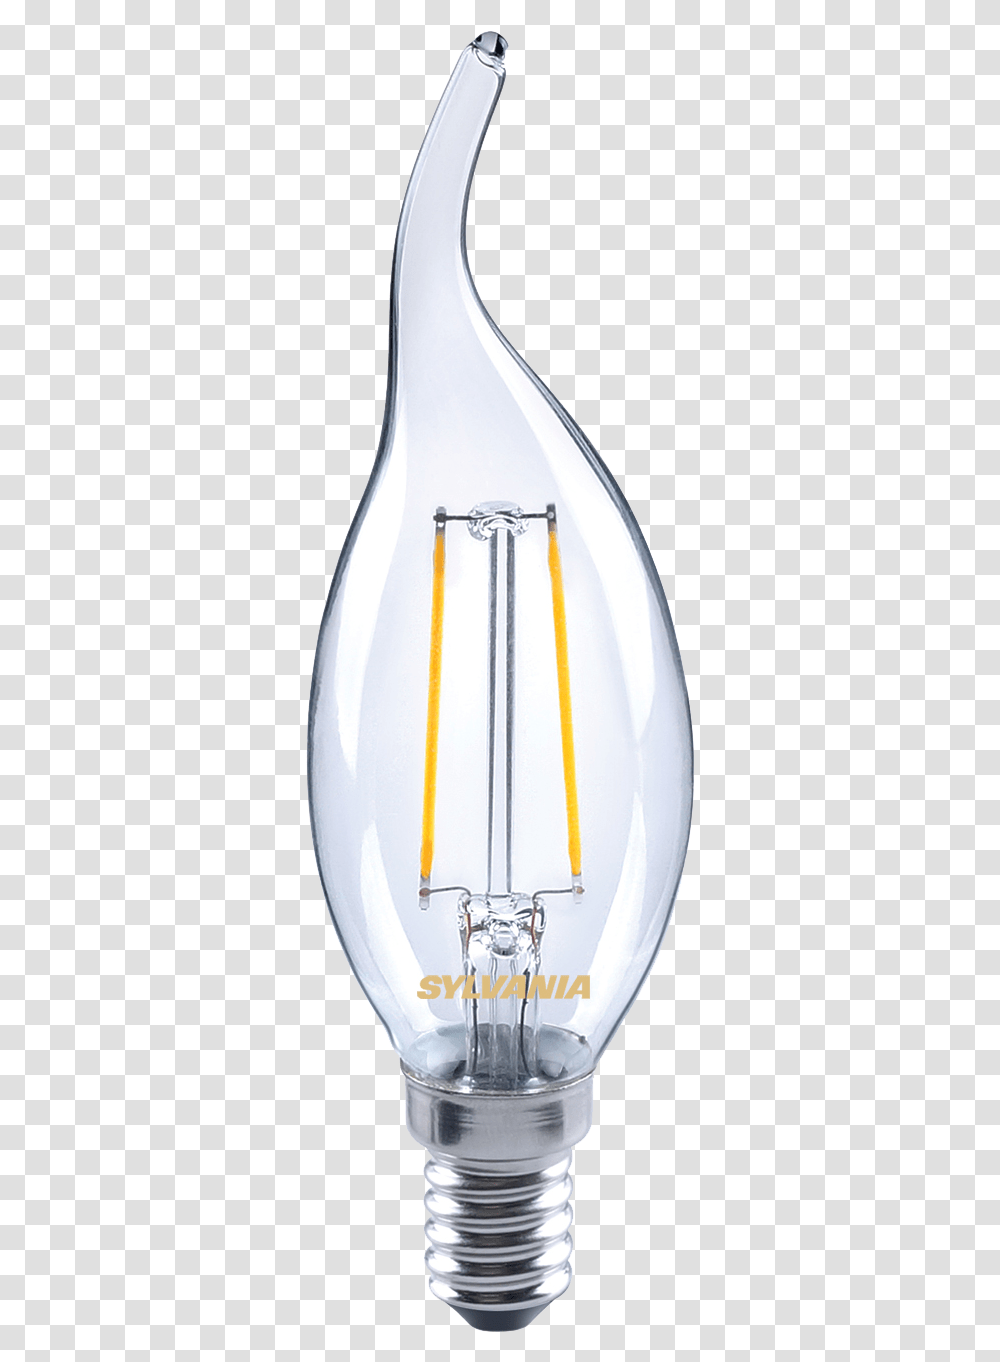 Incandescent Light Bulb, Lighting, Pottery, Lamp, Vase Transparent Png